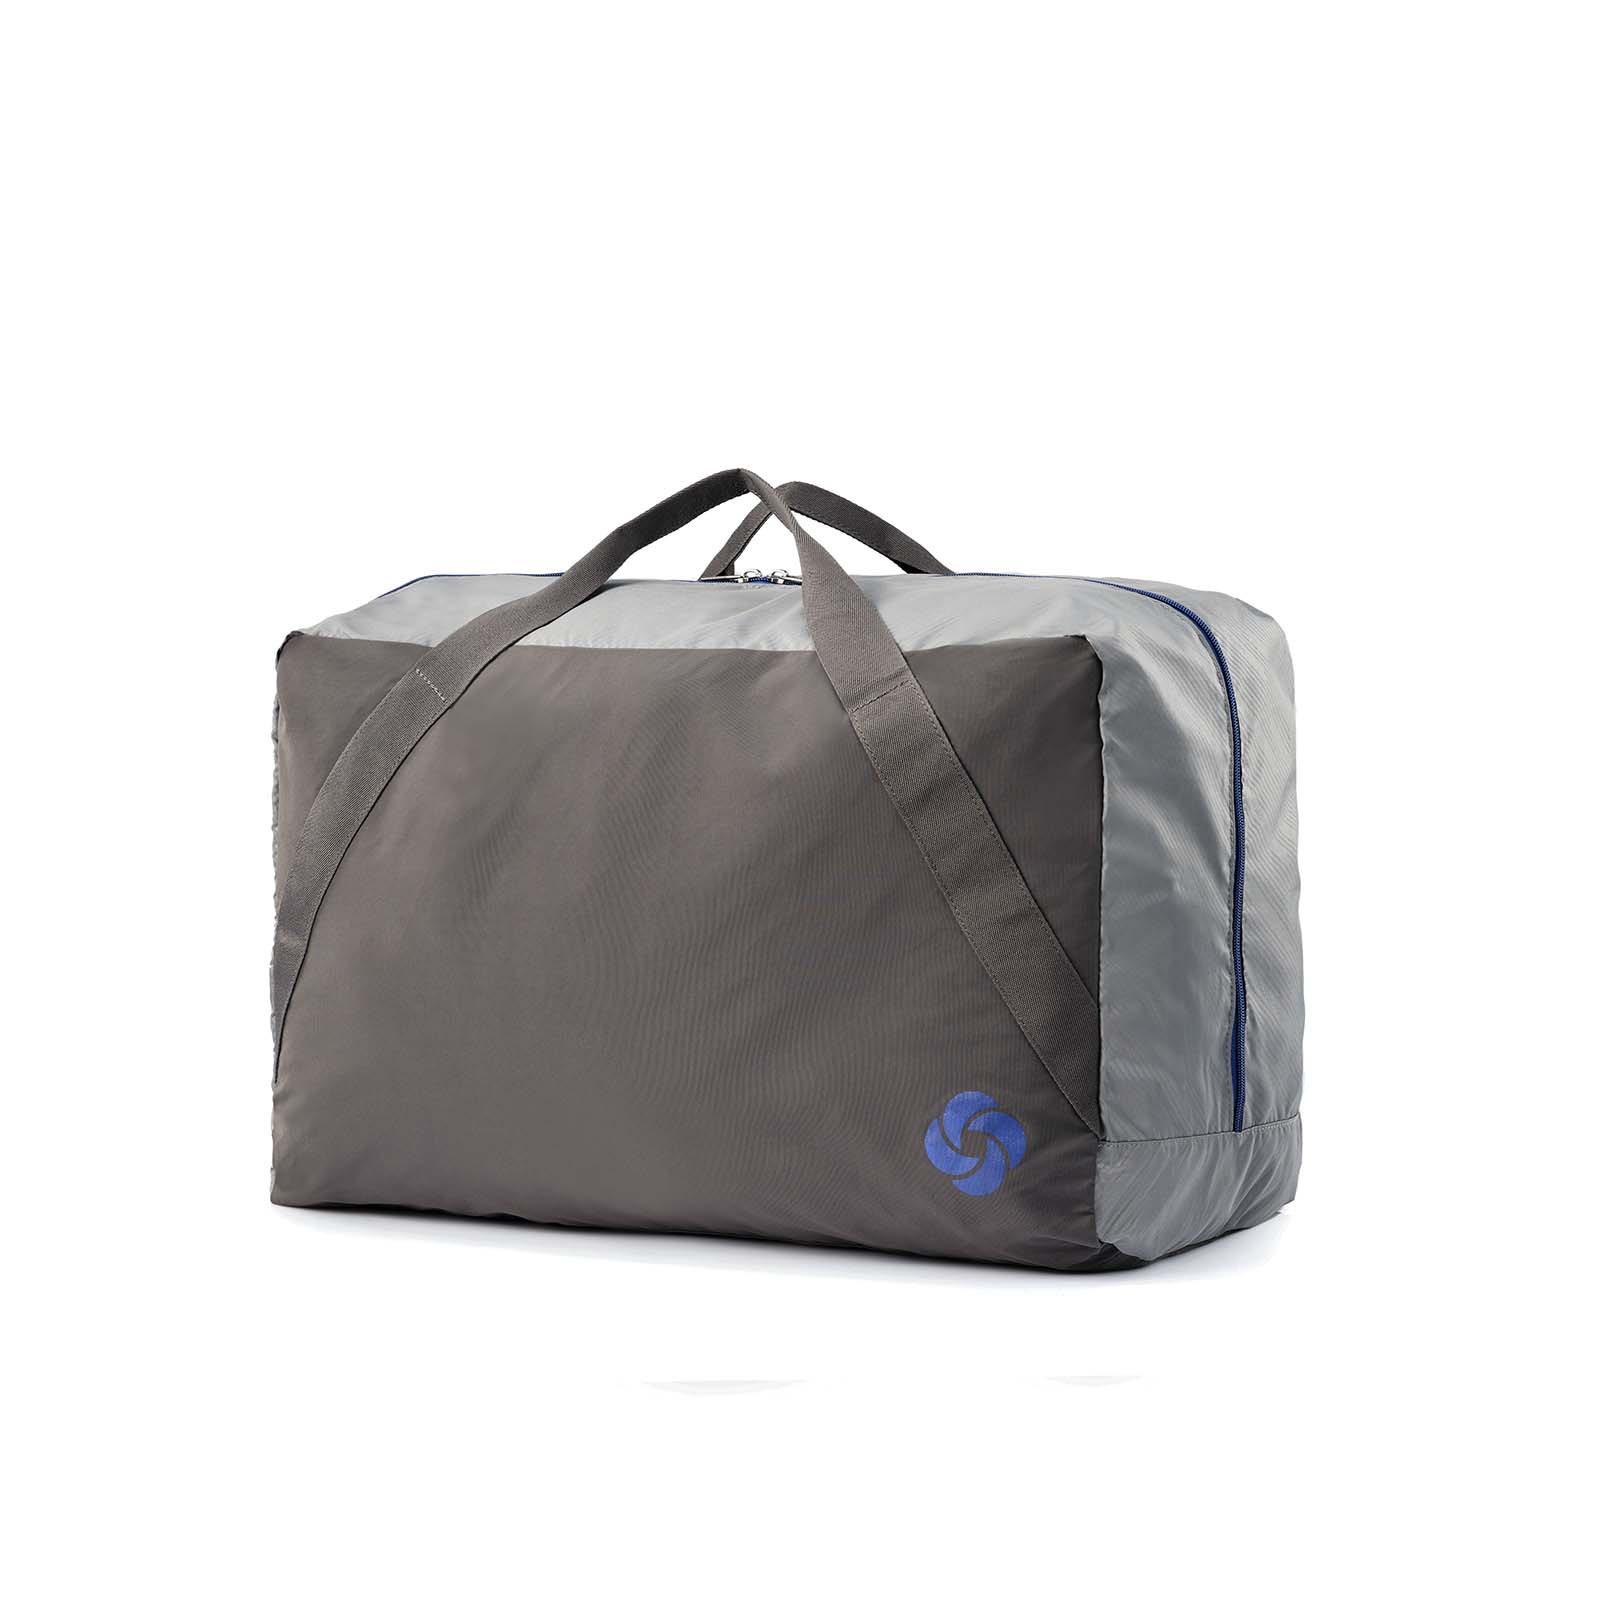 Samsonite-73h-55cm-Suitcase-Black-Carry-Bag